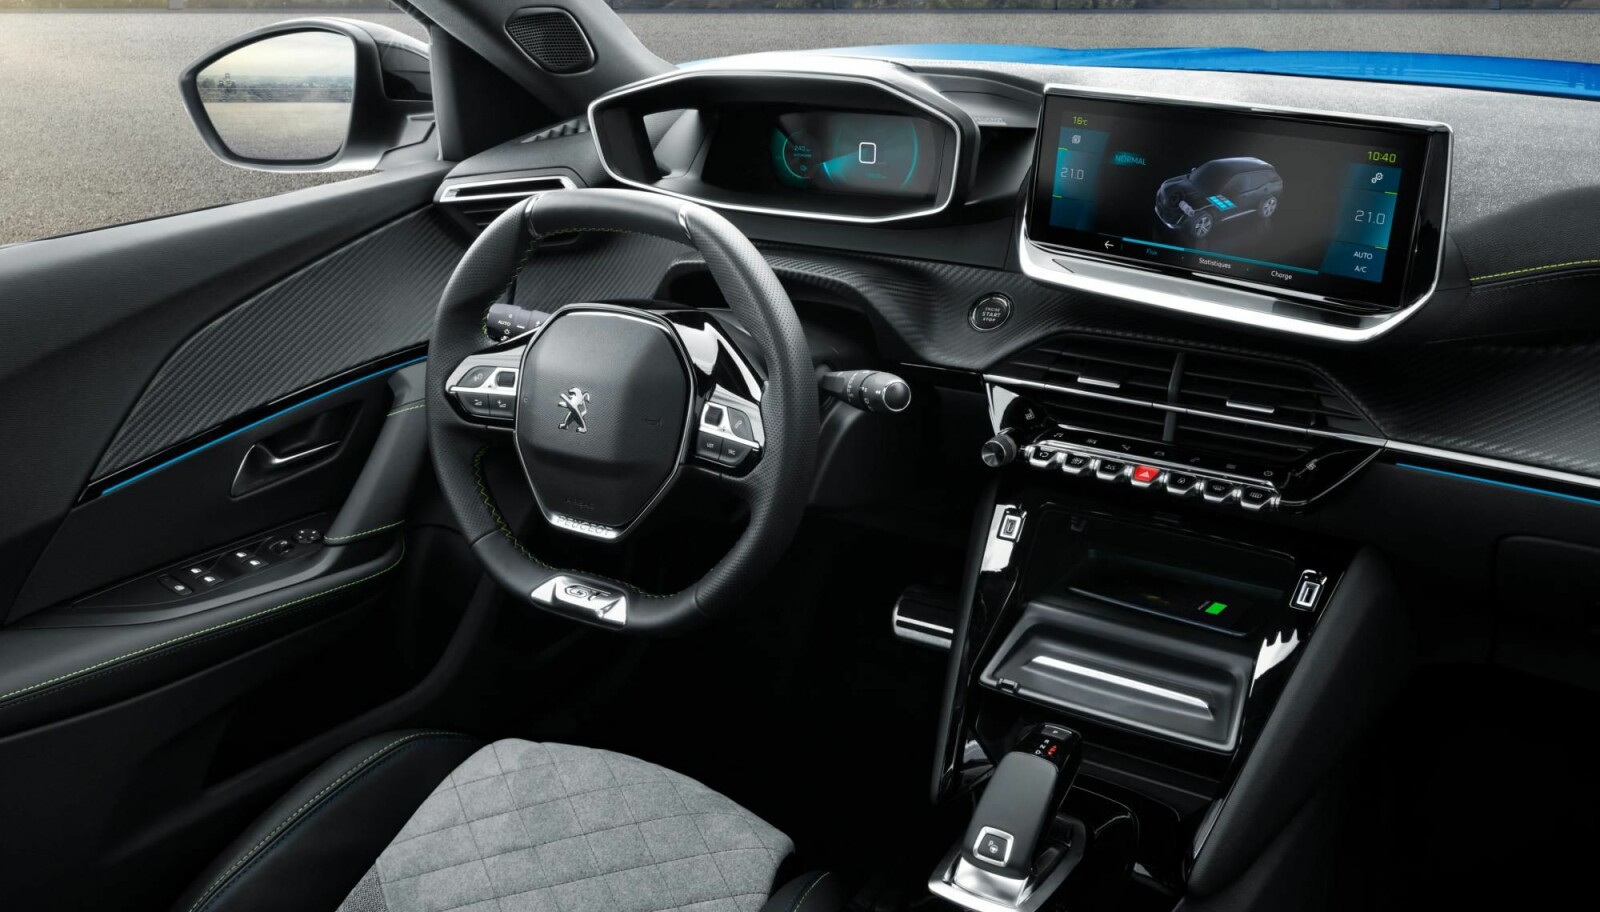 MODERNE: Peugeot i-cockpit 3D skal gi god oversikt. Det lille rattet er blitt en egen Peugeot-signatur.